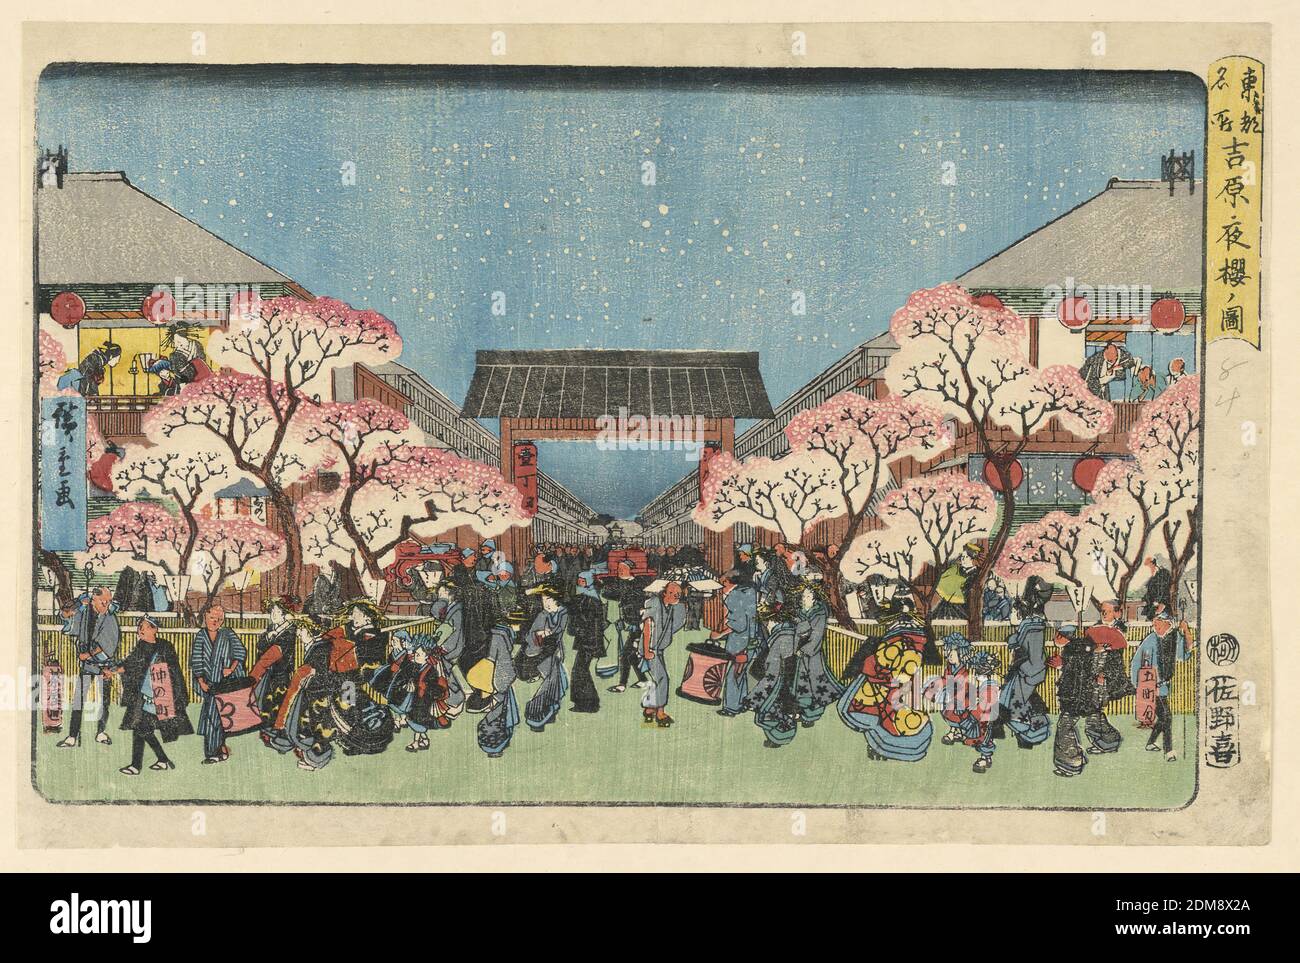 Neujahr im Tempel, Ando Hiroshige, japanisch, 1797–1858, Holzblock-Druck in farbiger Tinte auf Papier, Diese Neujahrsszene ist ein verrückter Strich, um zum Schrein und Tempel für die jährliche Tradition zu gelangen, um ein großartiges neues Jahr zu haben. Tausende Menschen schwärmen mitten im Winter, um ihre Achtung zu erweisen, Wünsche zu machen, für gute Gesundheit und Sicherheit zu beten und insgesamt gute Segnungen für das kommende Jahr zu haben. Hiroshige schmückt die Szene mit unrealistischen Kirschblüten, gibt ihr aber eine fröhliche und feierliche Kulisse., Japan, 1797-1858, Landschaften, Print Stockfoto